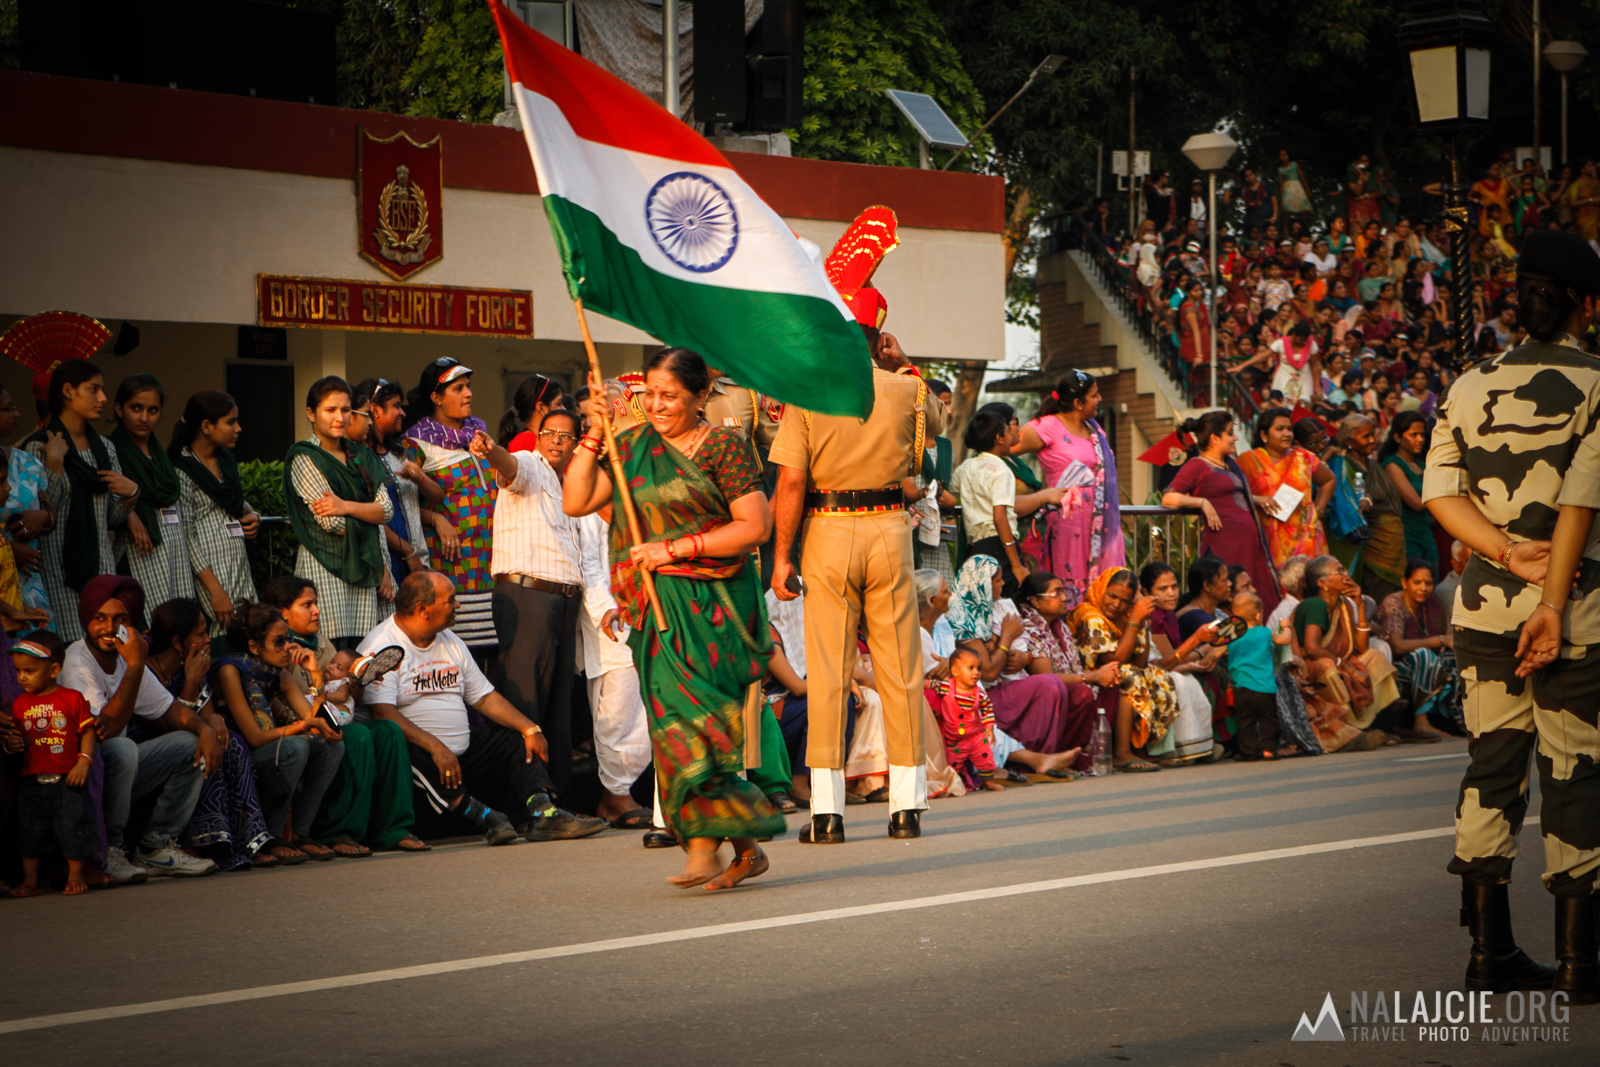 PrzebieÅ¼ki z flagÄ Indii